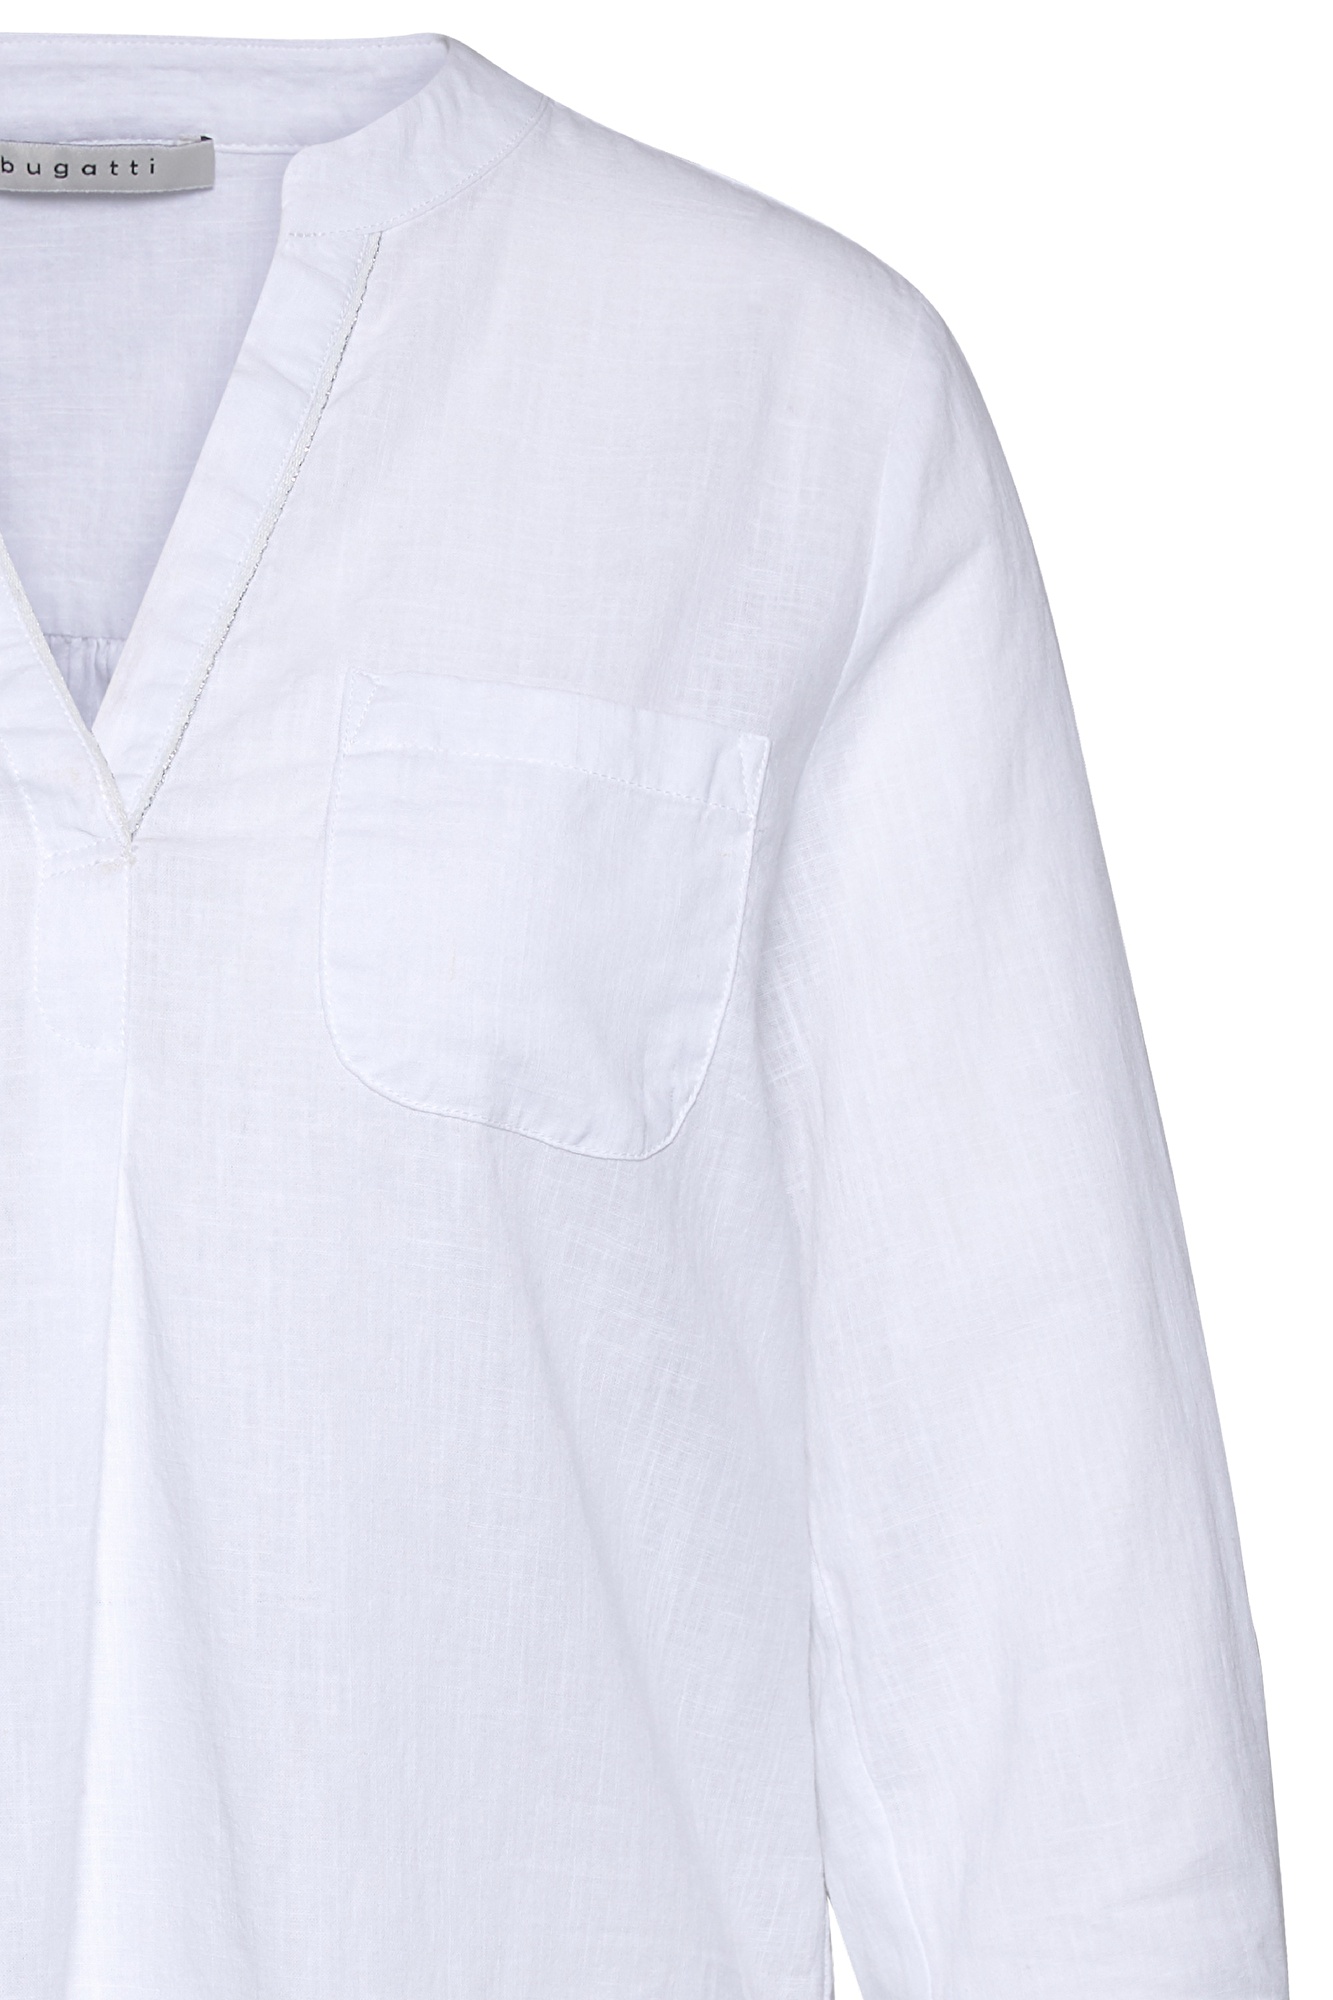 Bluse aus leichtem Leinen-Baumwoll-Mix in weiß | bugatti